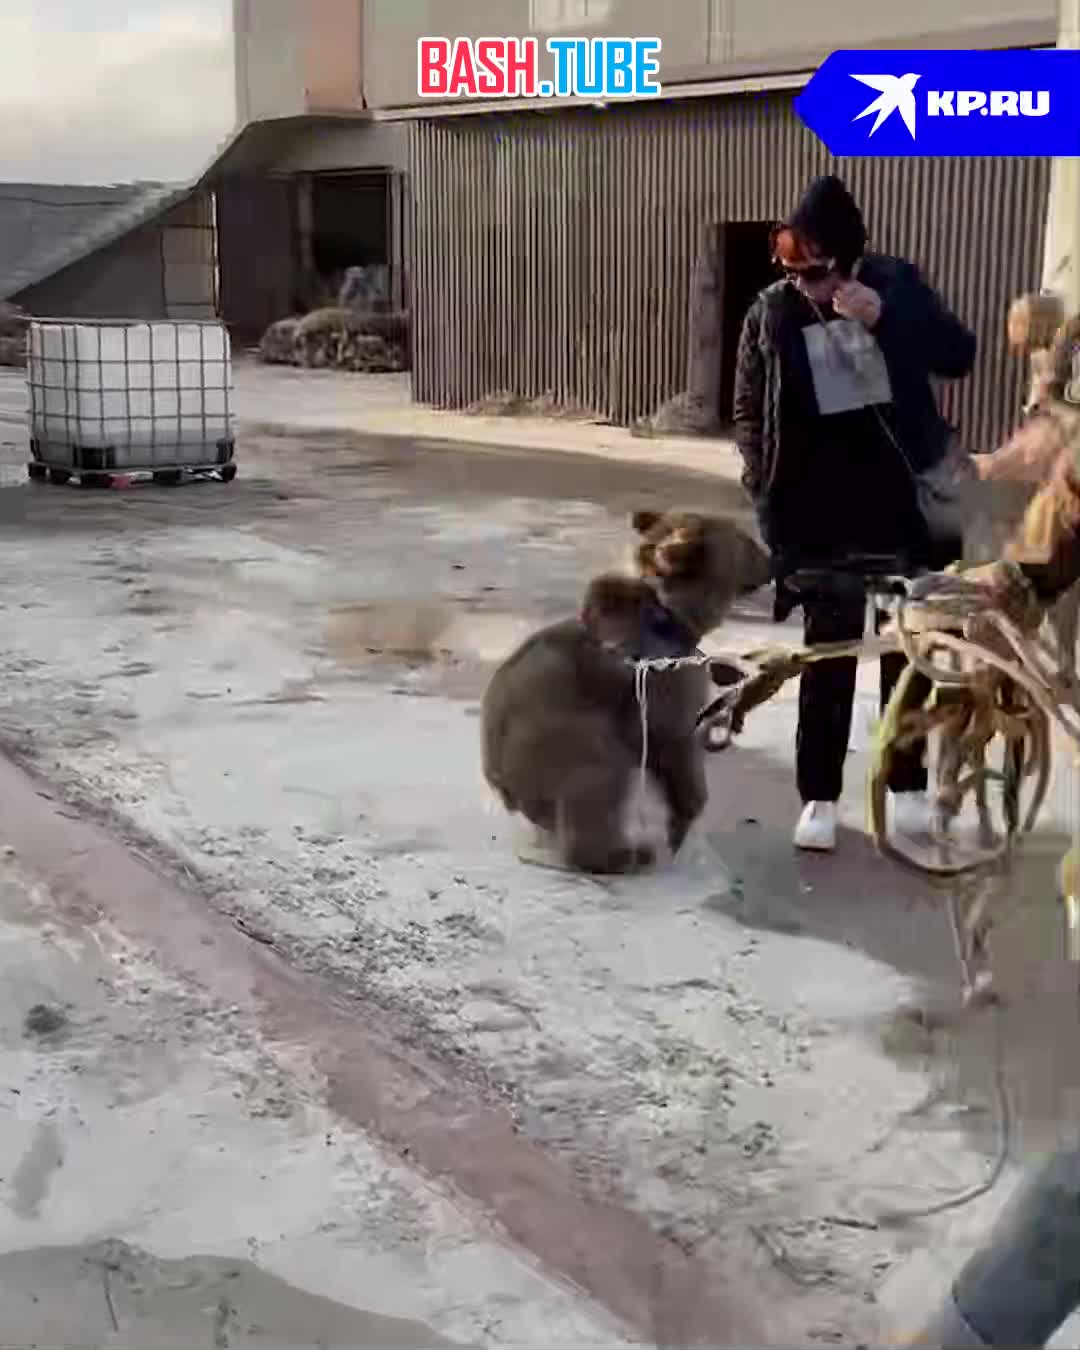  Хотели продать в ресторан: медвежонка чудом спасли от браконьеров в Дагестане